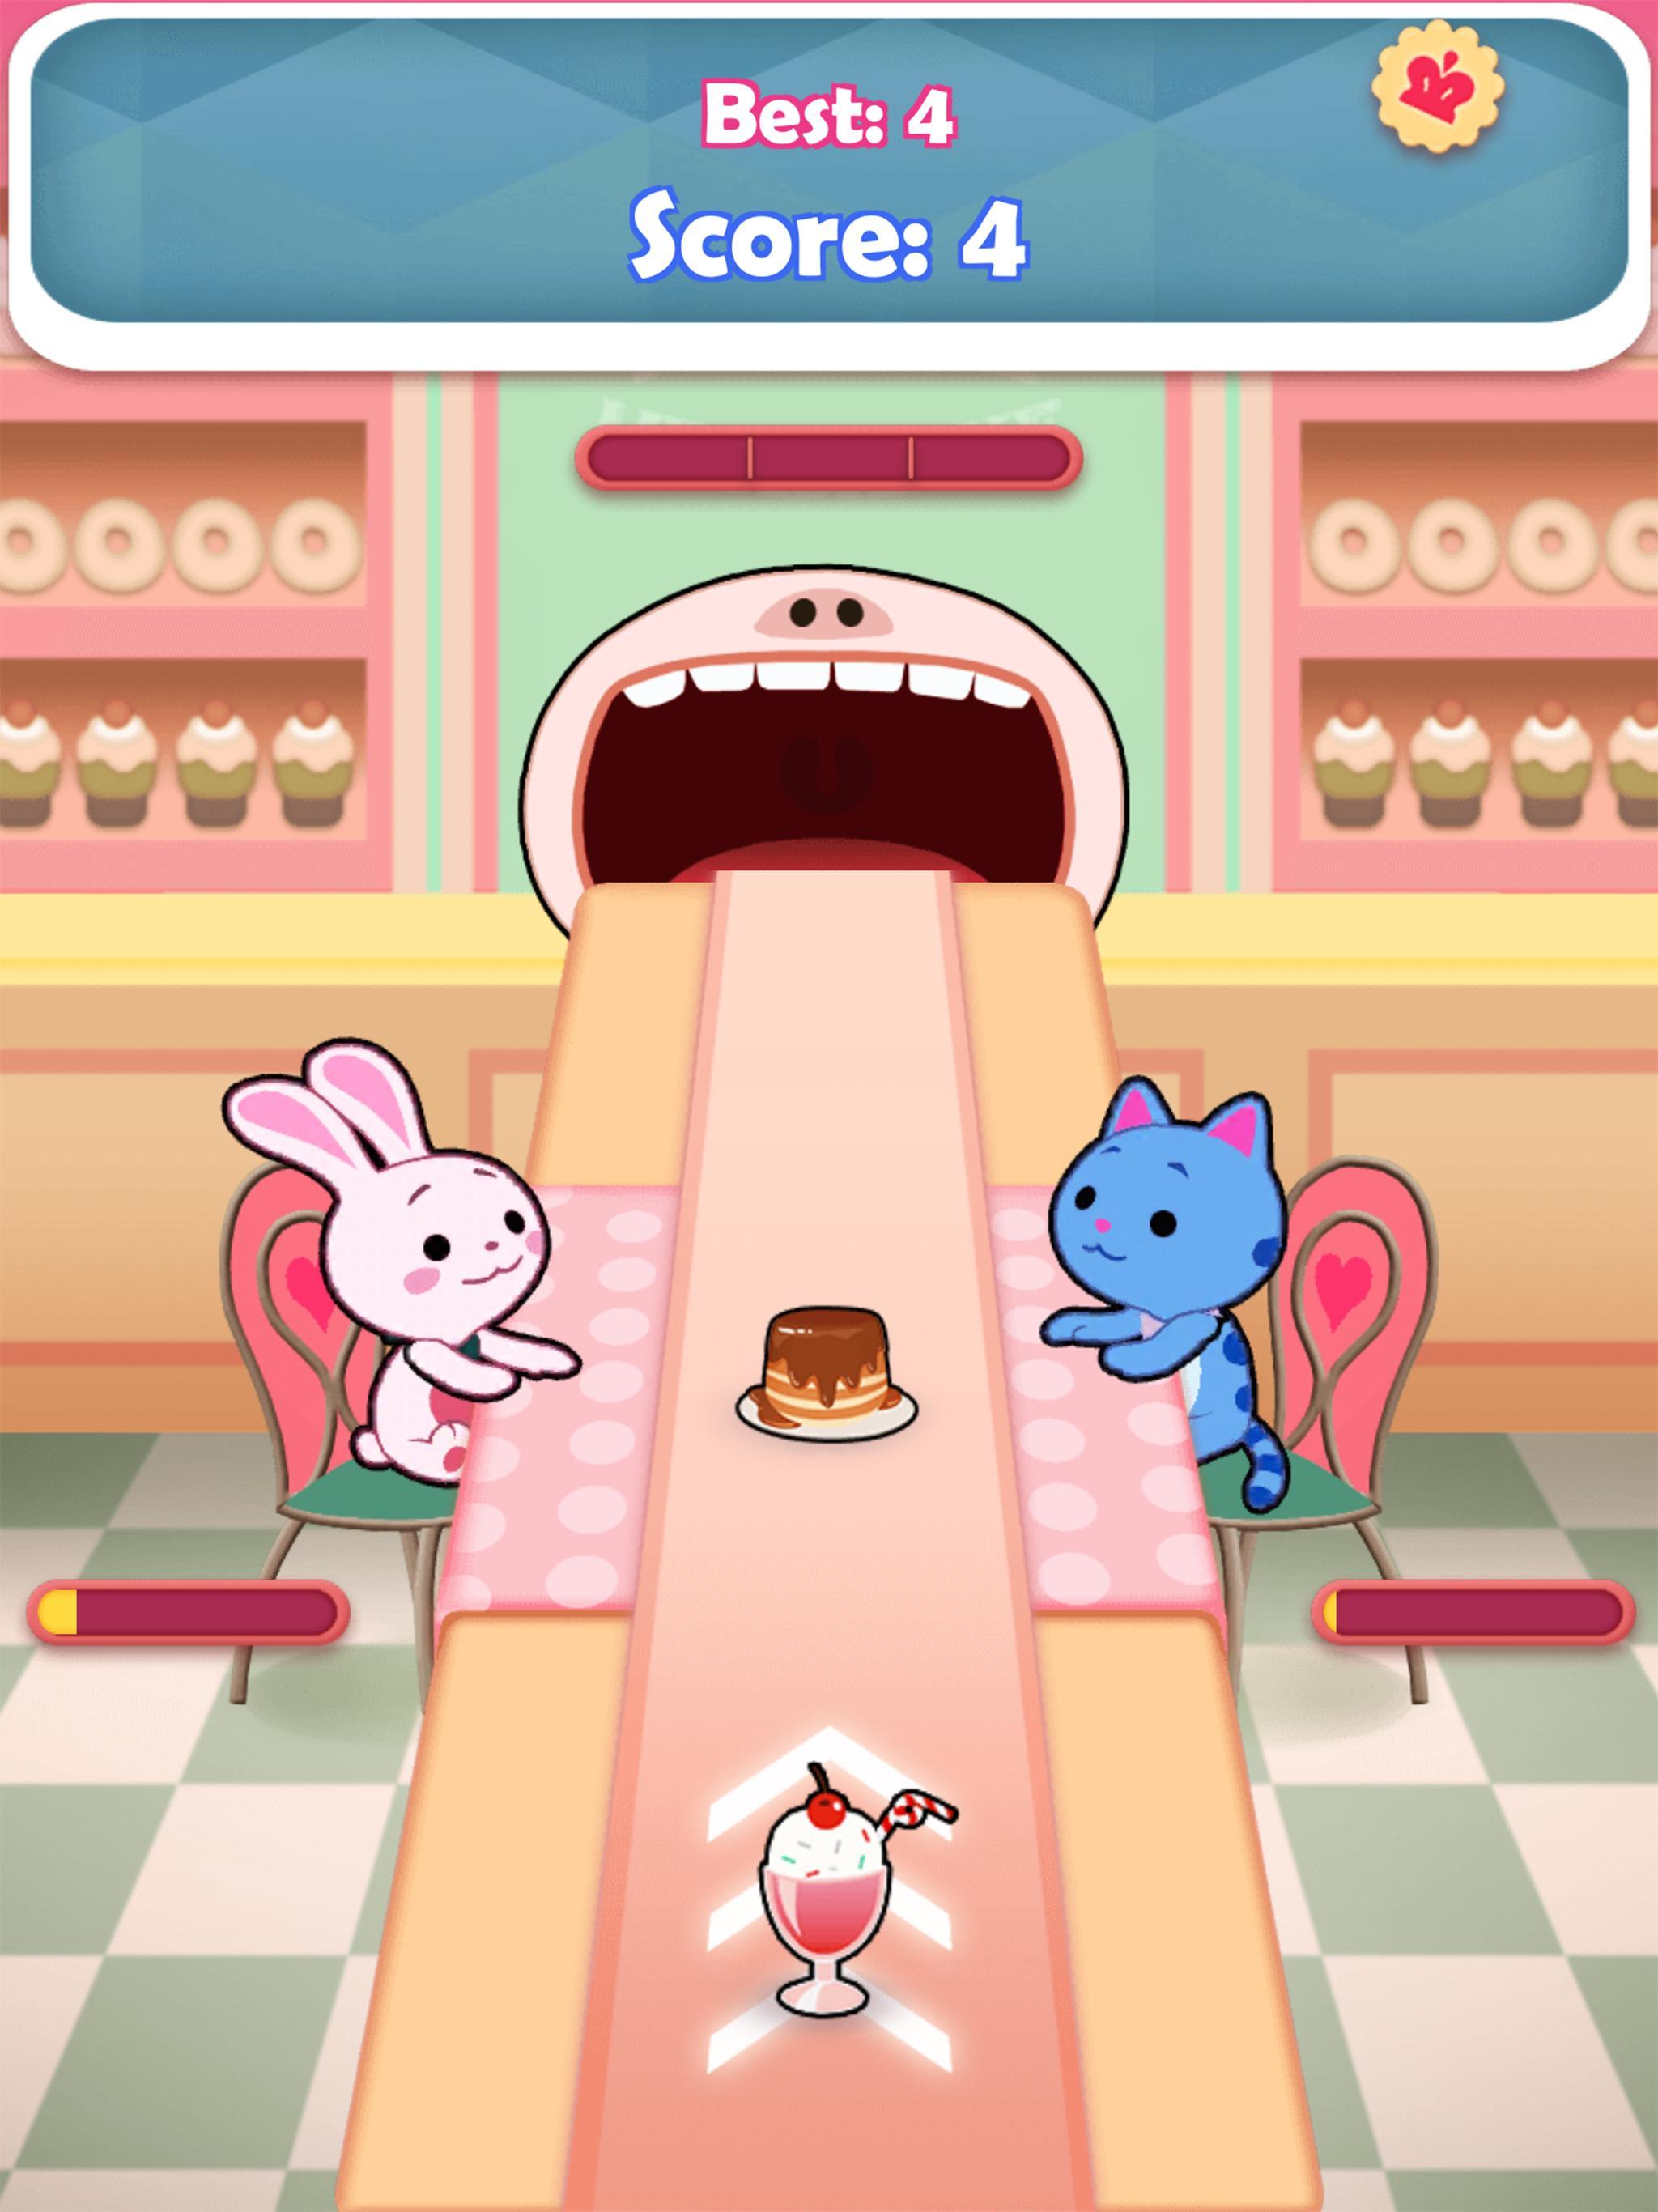 Pancake Milkshake™ screenshot game